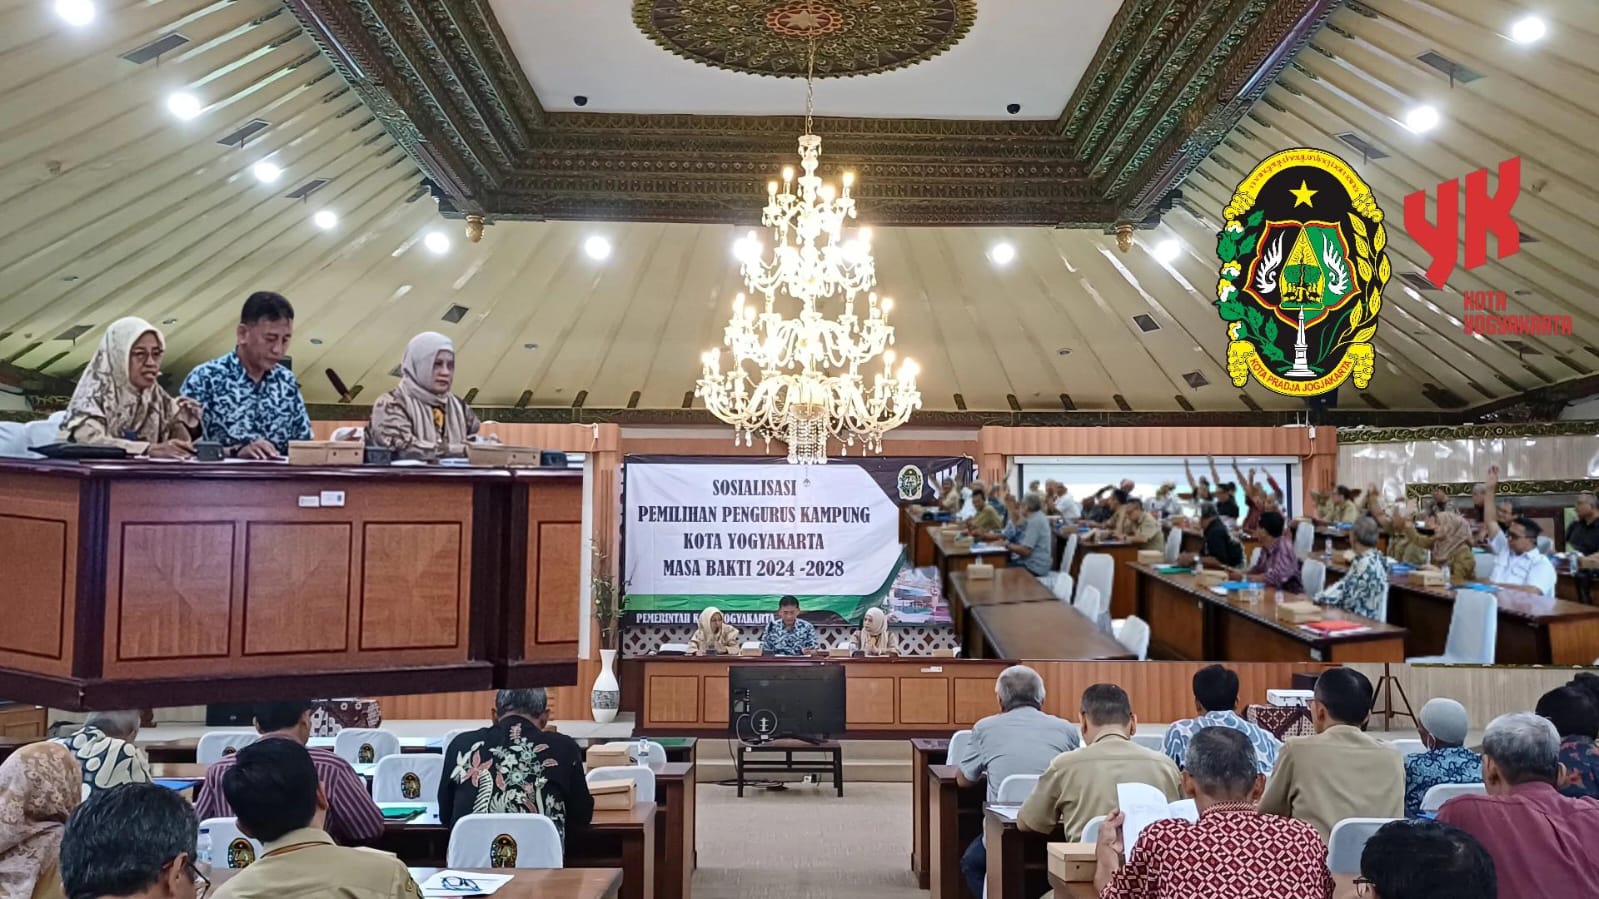 Sosialisasi Pemilihan Pengurus Kampung se-Kota Yogyakarta Masa Bhakti 2024-2028